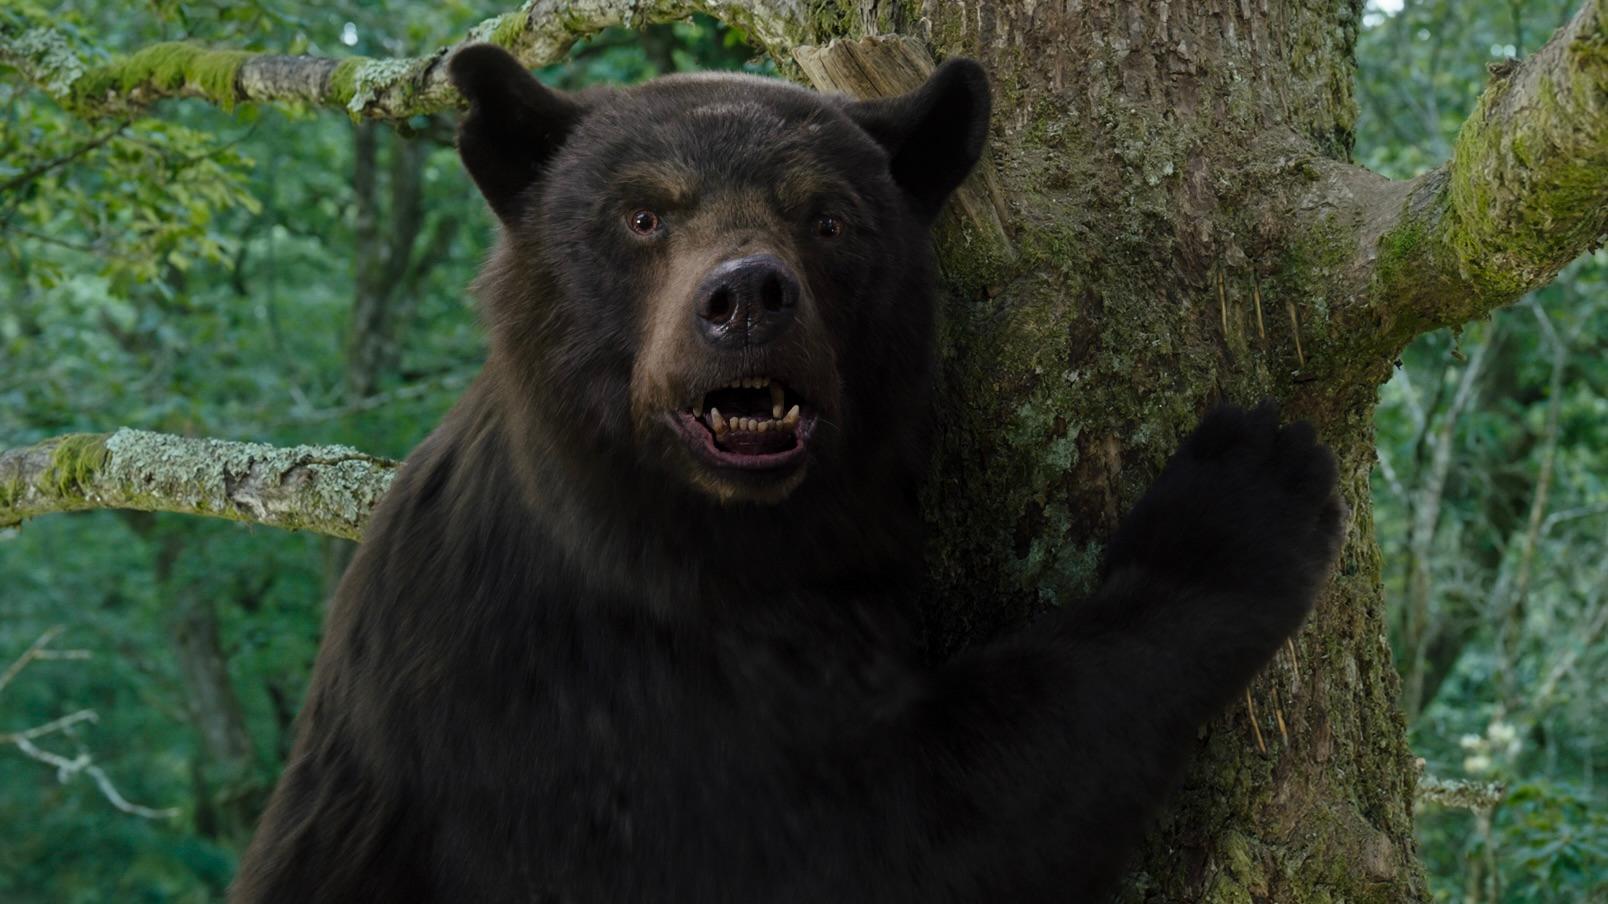 The black bear in Cocaine Bear.